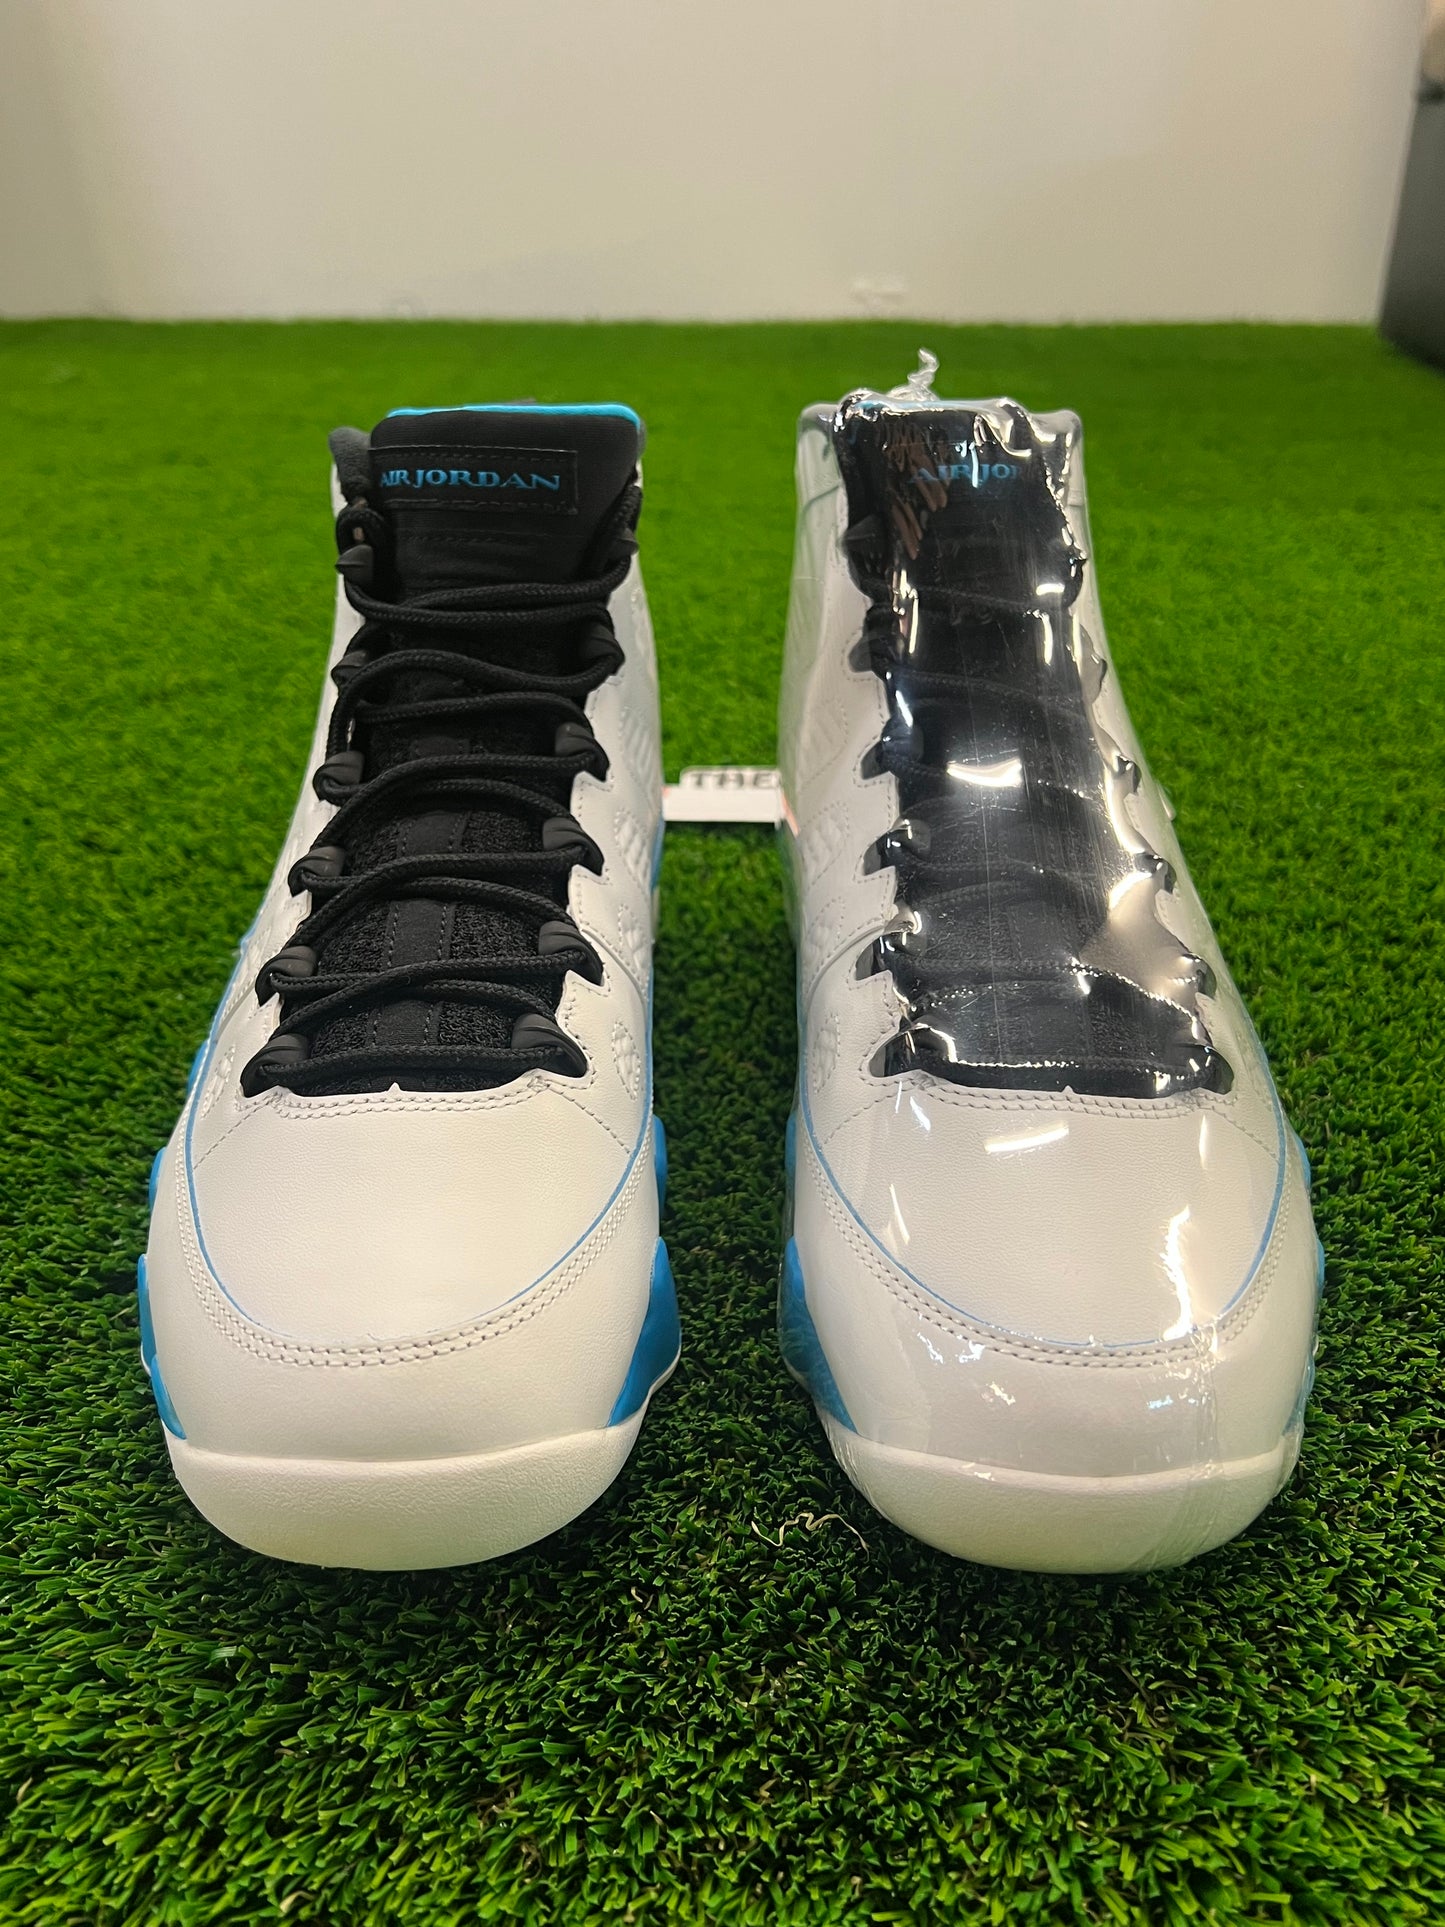 Men’s Air Jordan 9 UNC Size 10 Shoes Brand New